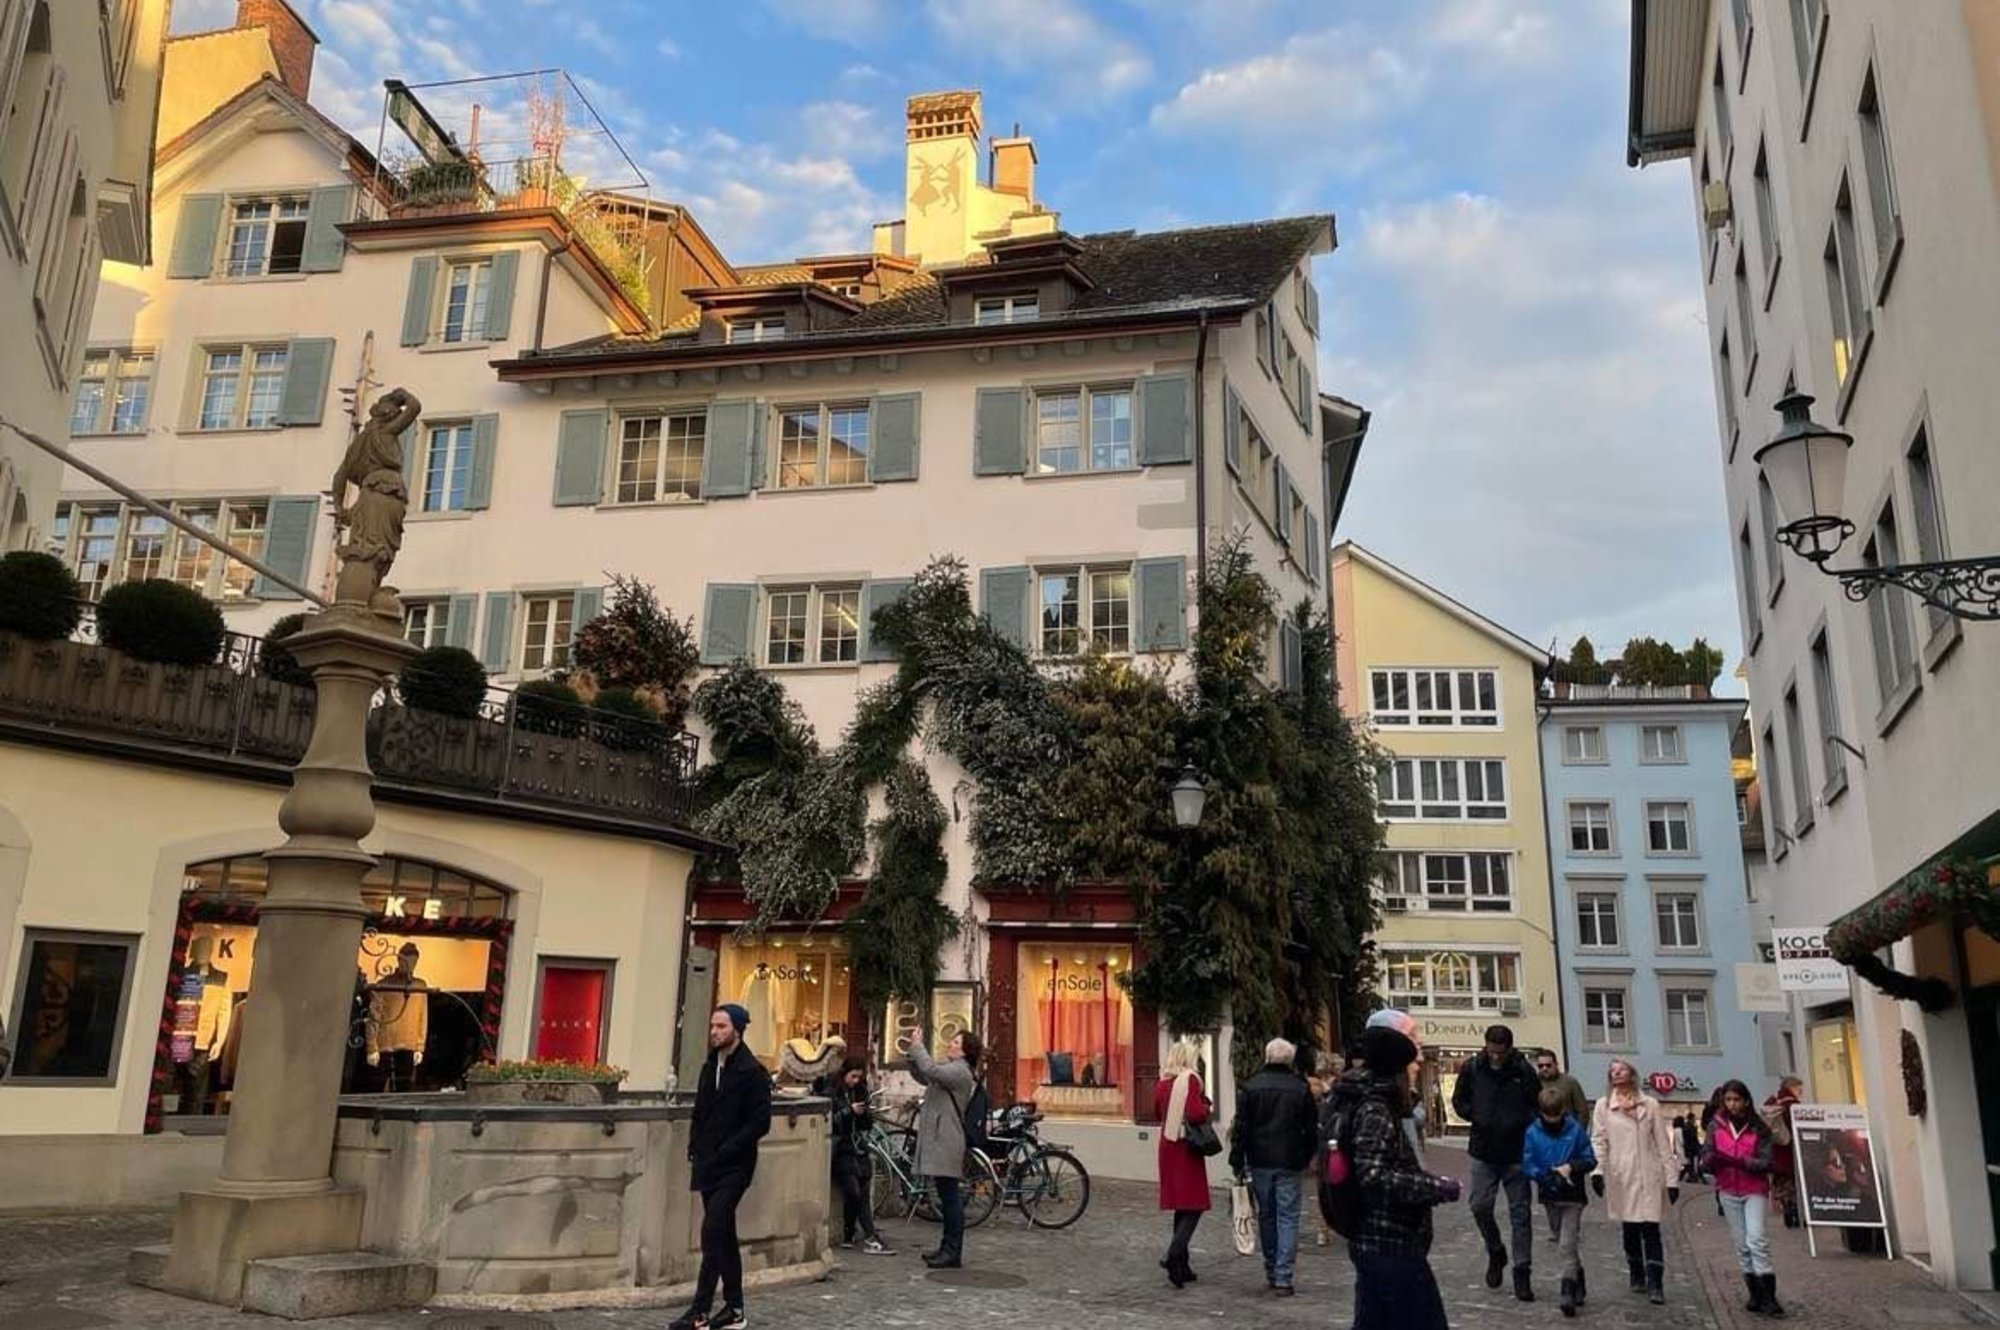 Вчера провела потрясающее время на экскурсии по Цюриху с Евгенией- захватывающая профессиональная интересная презентация города, который